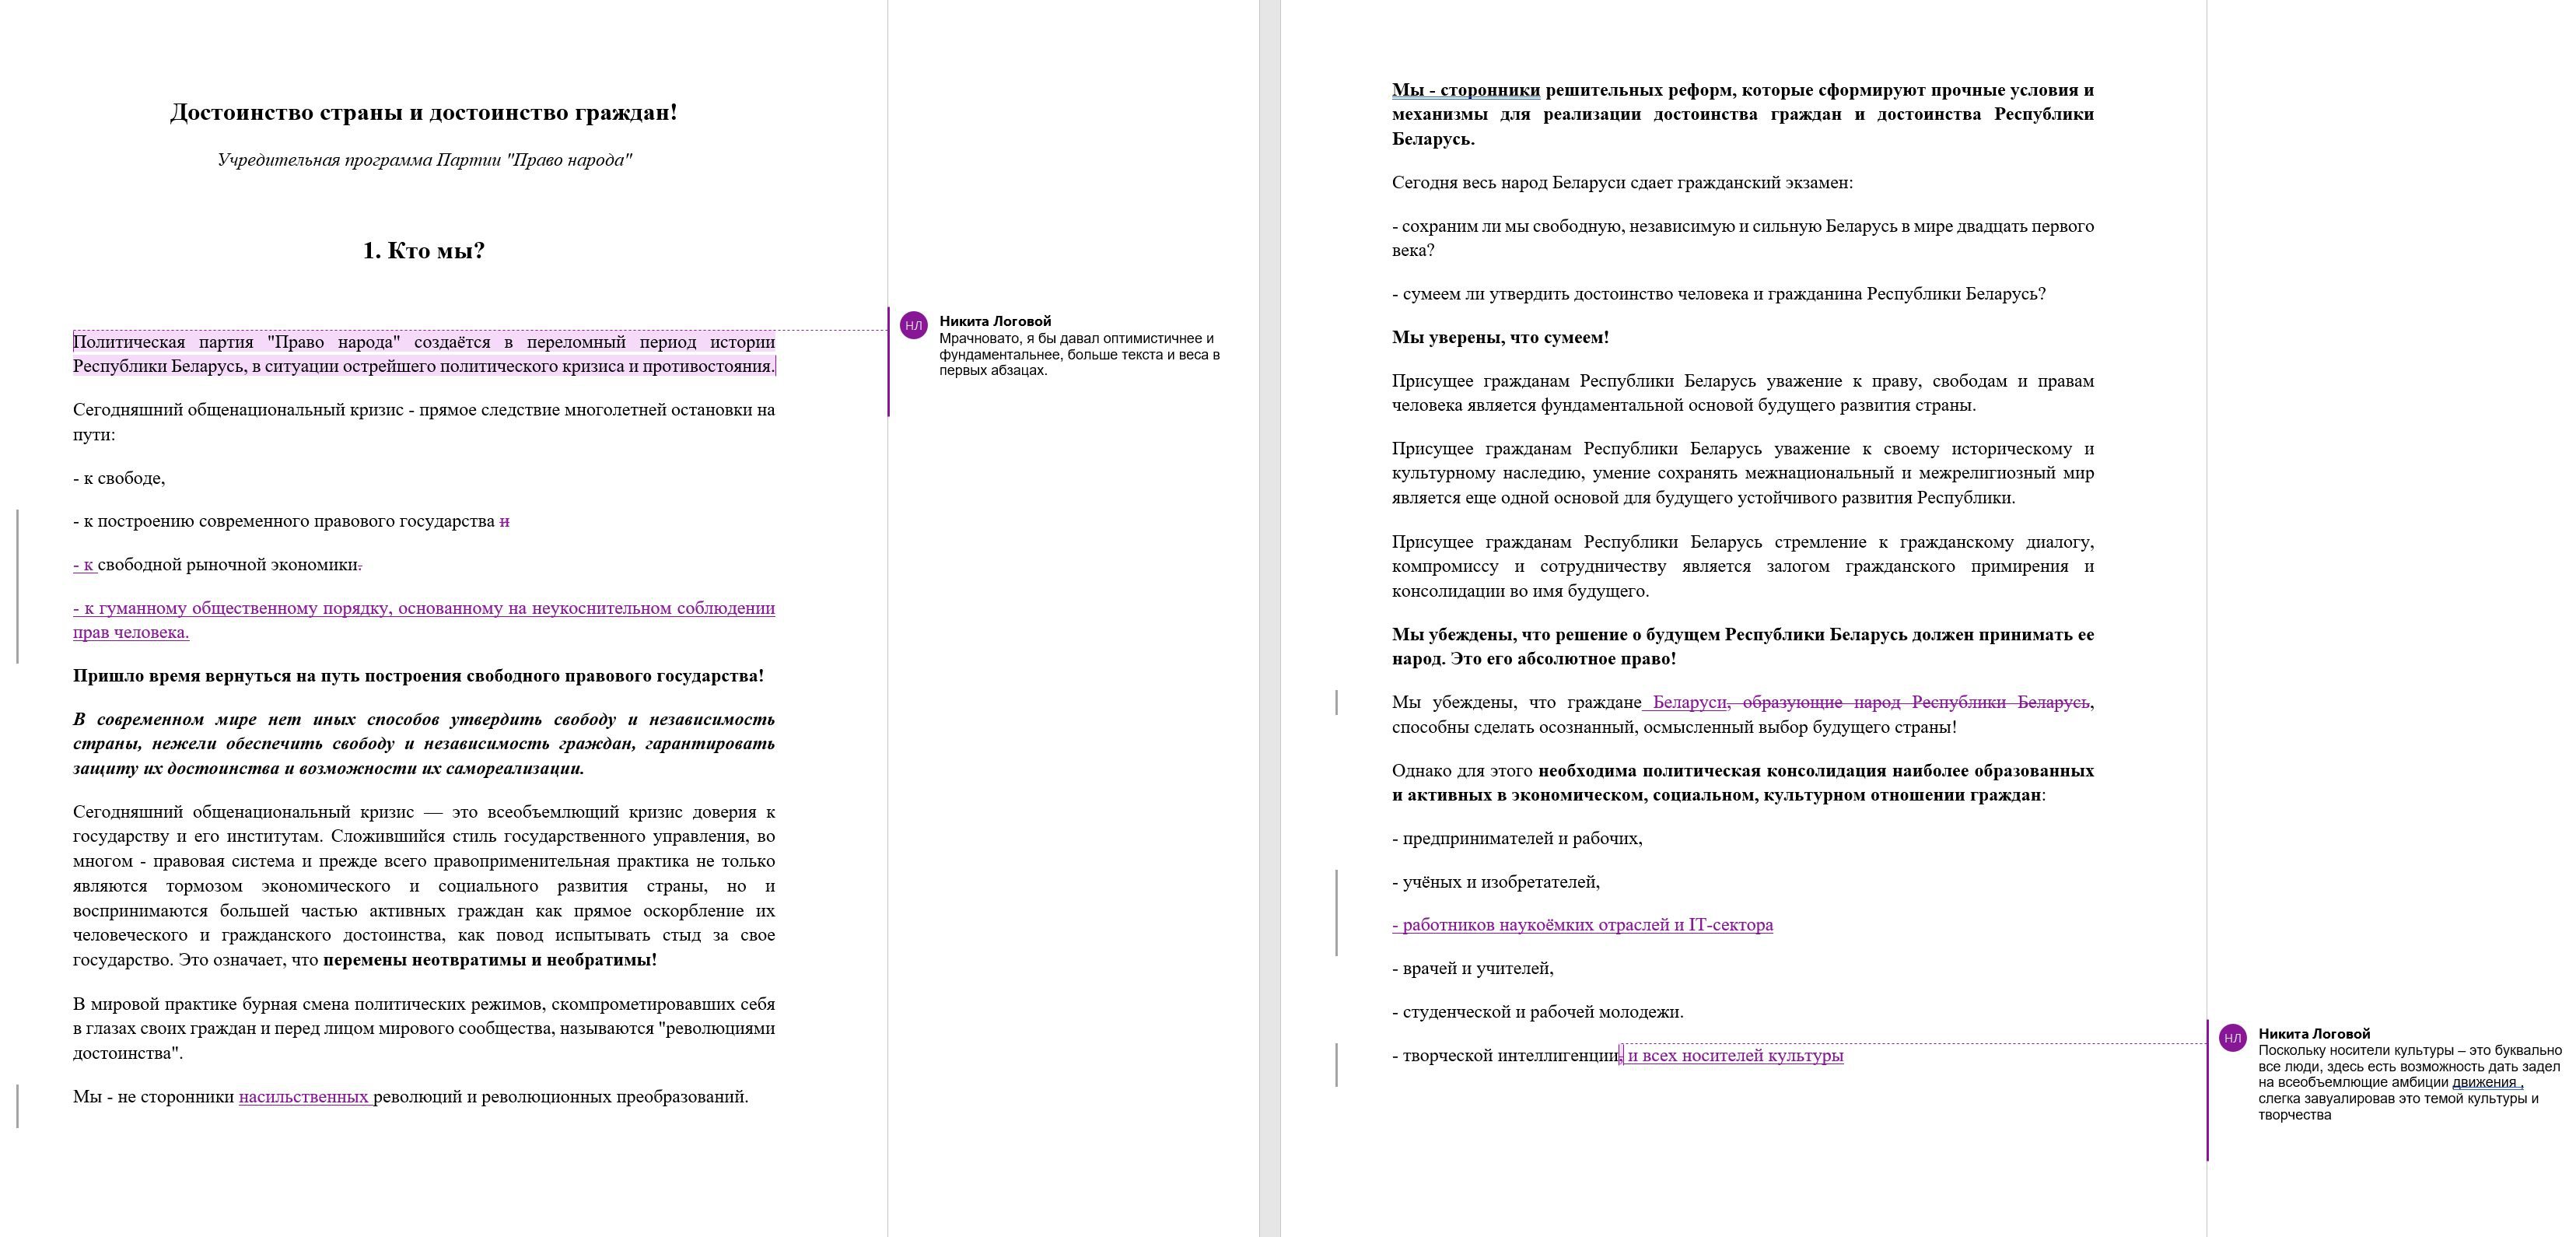 Документ із нотатками кремлівського куратора